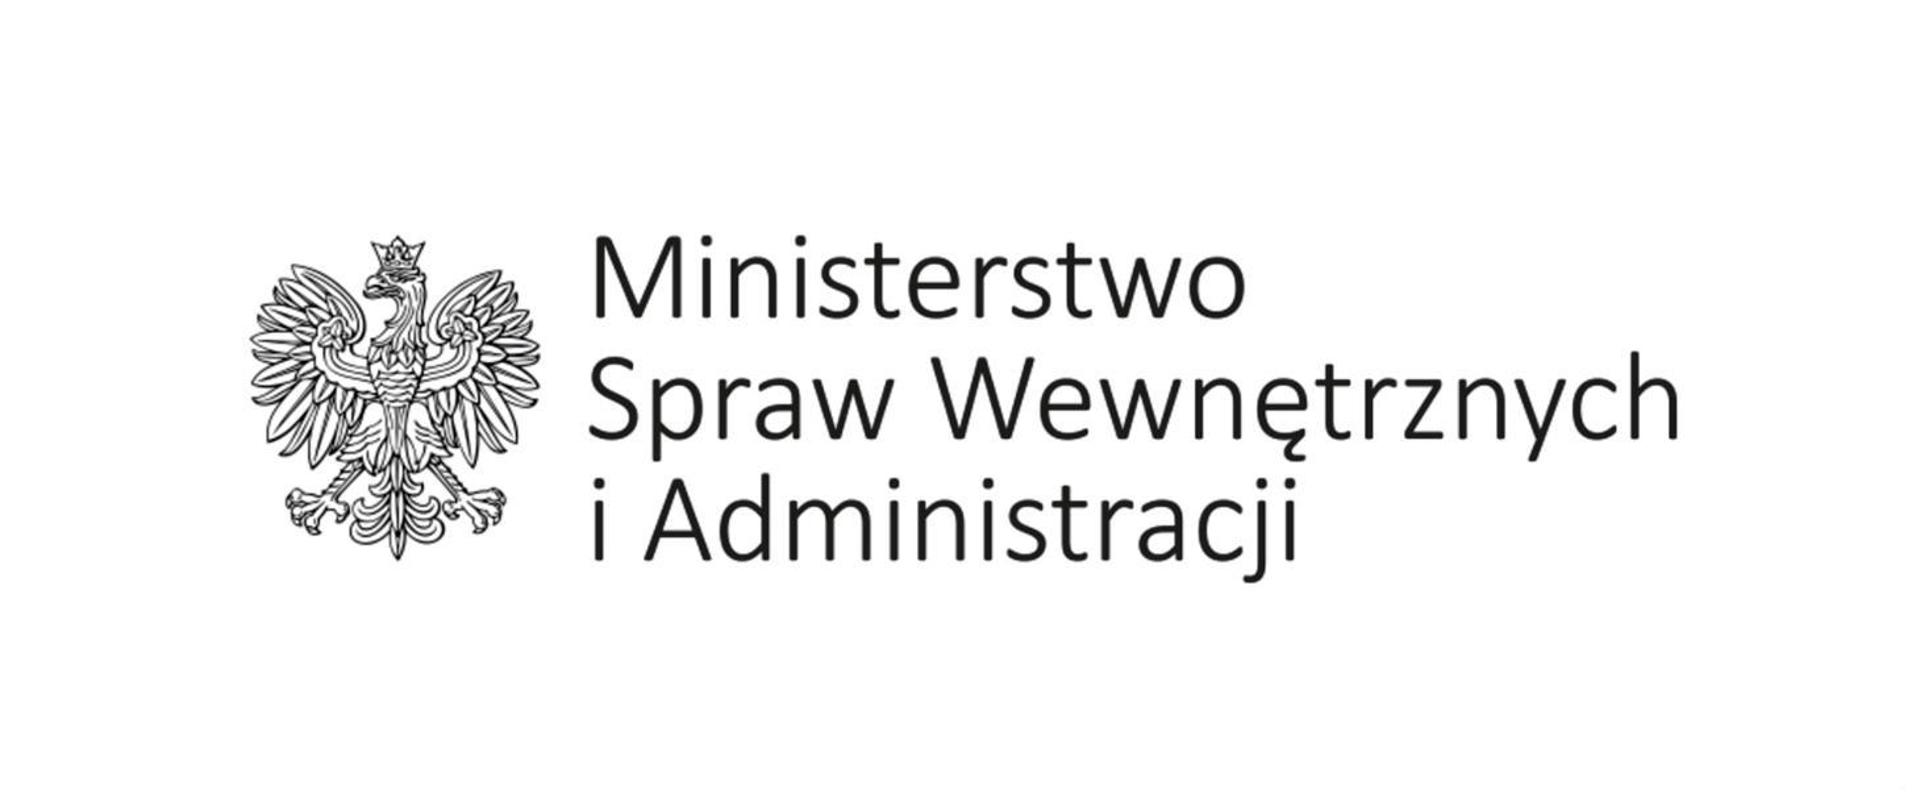 Ilustracja przestawia na białym tle , z lewej strony czarno biały orzeł oraz napis umieszczony po prawej stronie o treści Ministerstwo Spraw Wewnętrznych i Administracji 